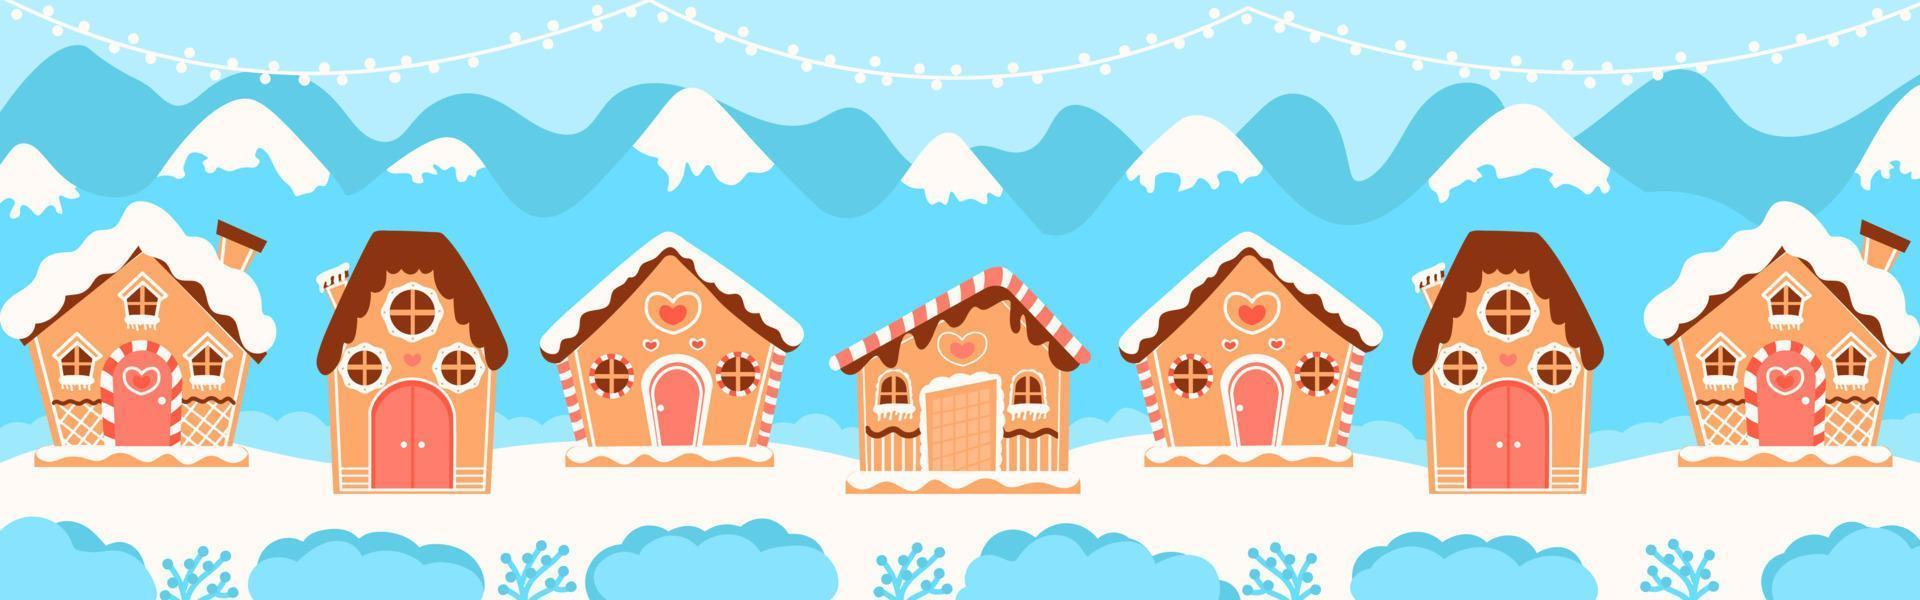 weihnachtslebkuchenhäuser webbanner für winterferien, grußkarte im karikaturstil auf blauem hintergrund vektor